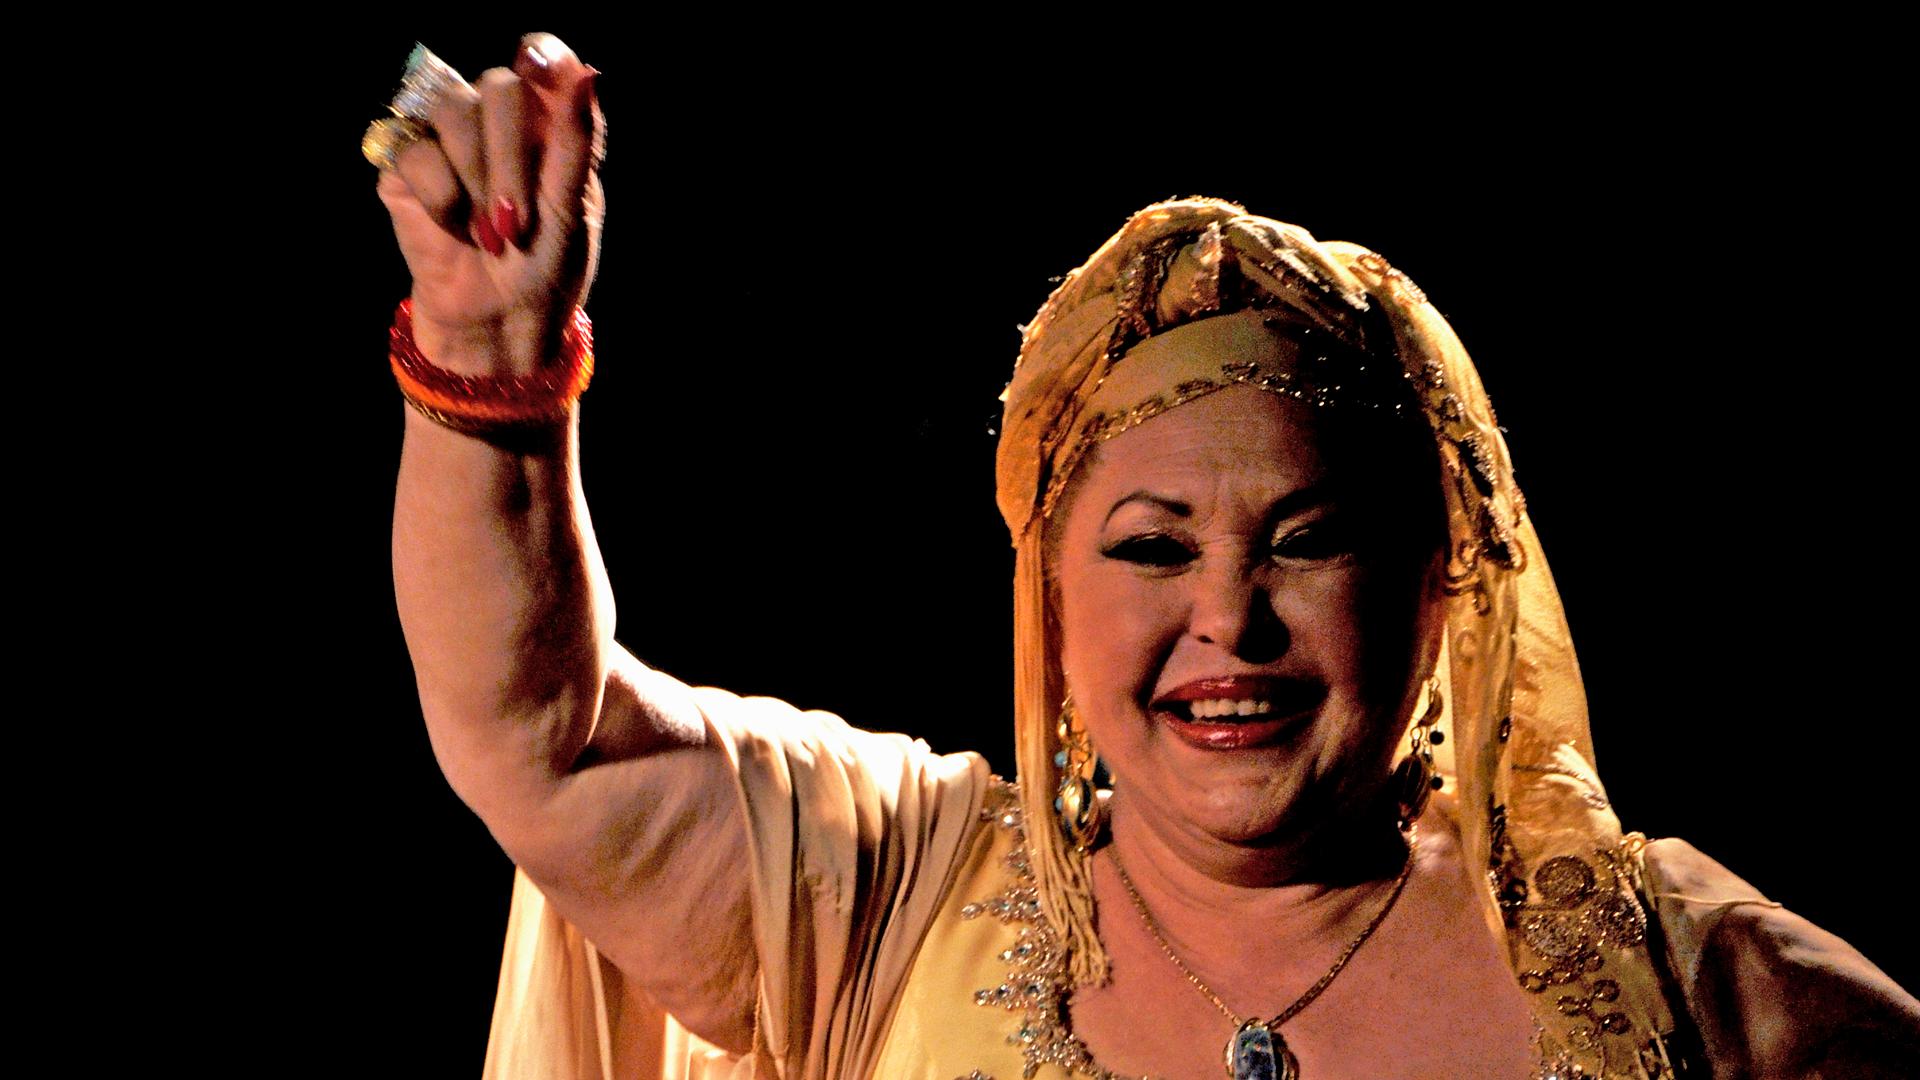 Esma Redžepova, queen of gypsy music.